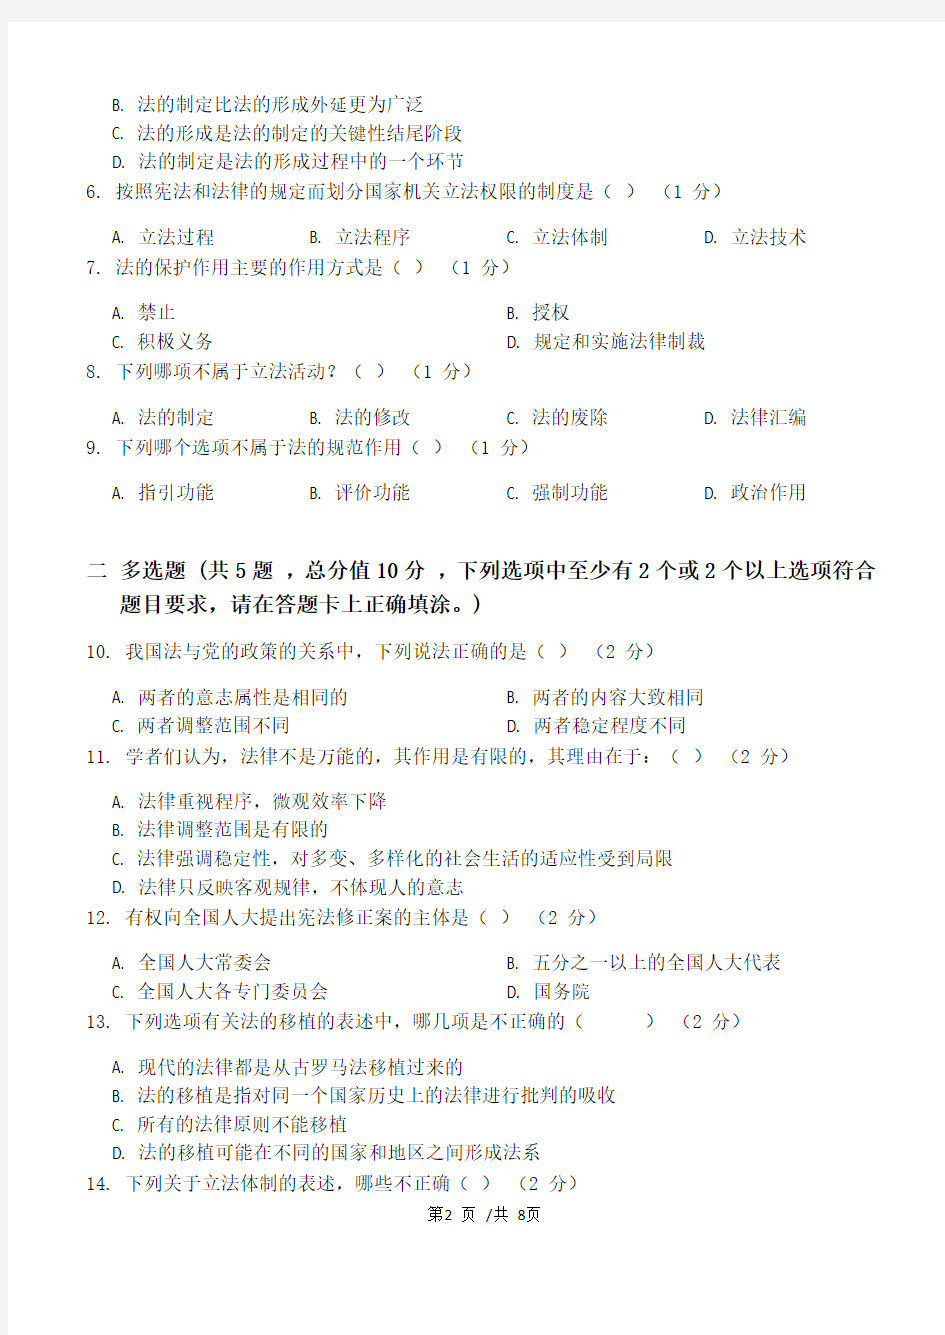 法理学第2阶段练习题  2020年上半年  江南大学  考试题库及答案  一科共有三个阶段,这是其中一个阶段